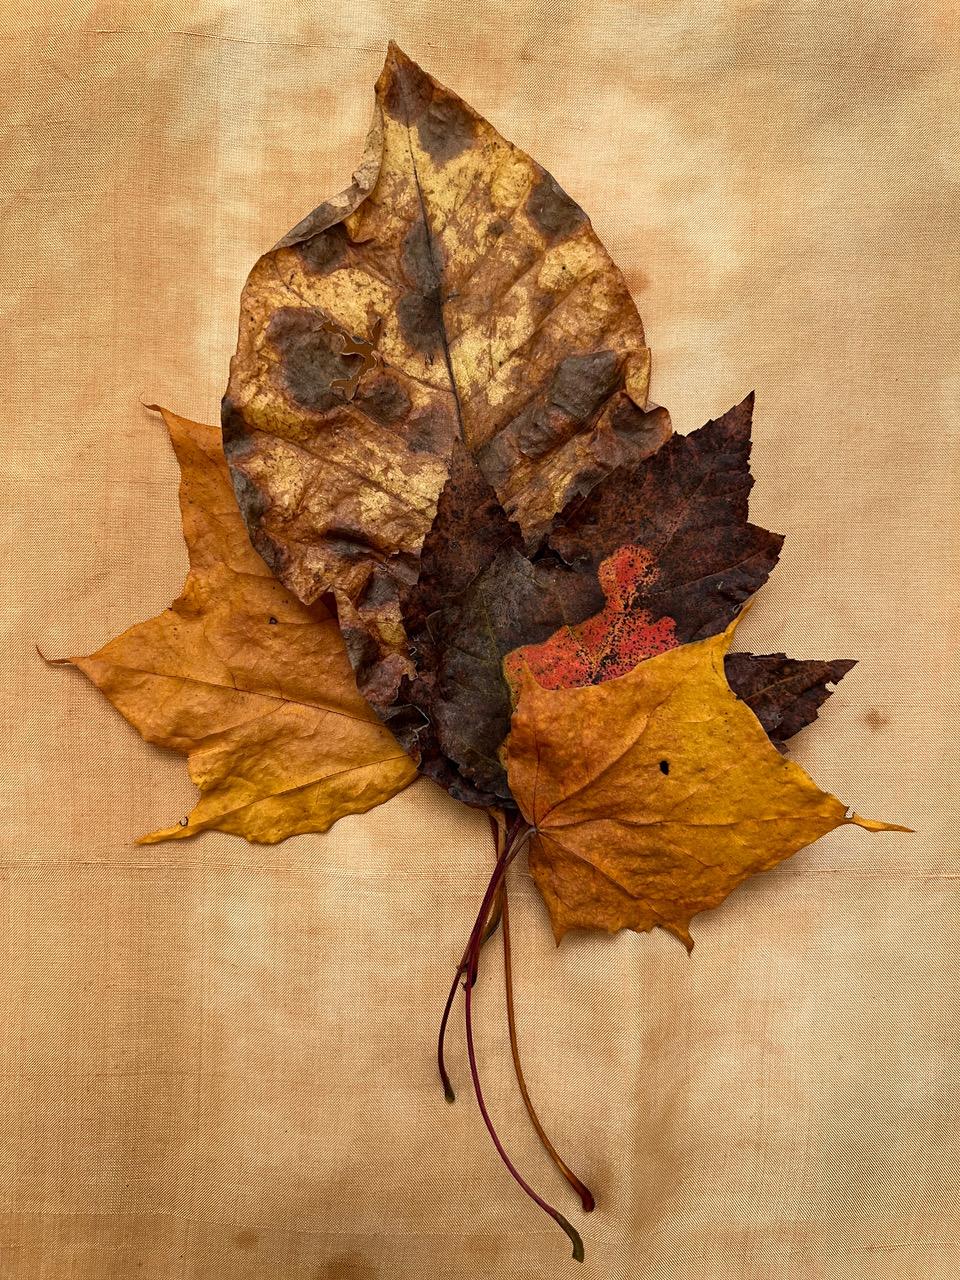 Es handelt sich um eine großformatige Pigmentfotografie des Künstlers Paul Cava, die eine Serie von neun rasterförmig angeordneten Stillleben von Herbstblättern zeigt. Es ist auf Hahnemuhle Photo Rag Professional Papier gedruckt. Die Bildgröße